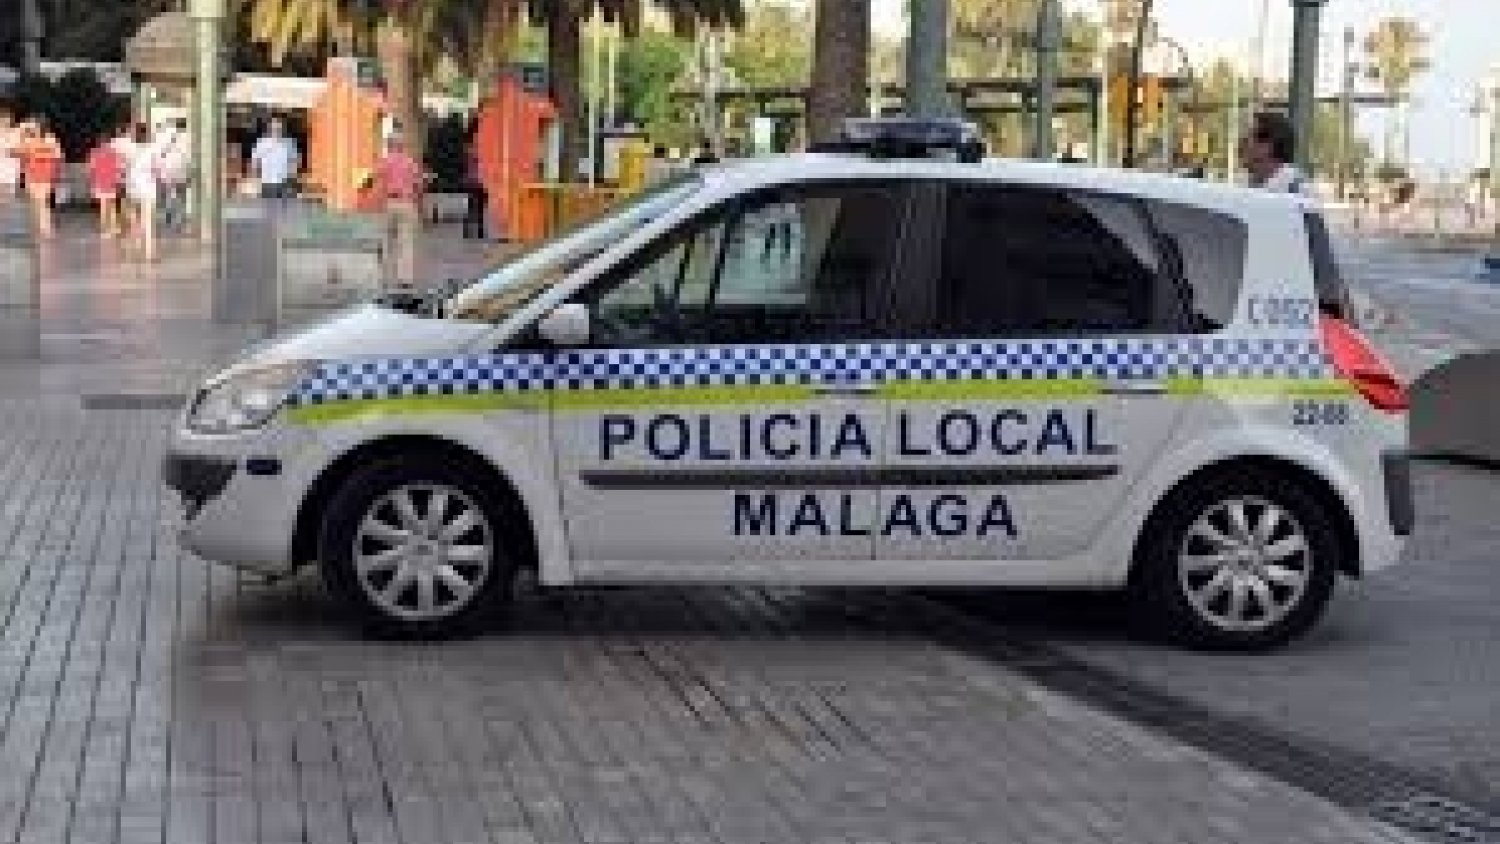 La Policía Local de Málaga localiza y detiene a un individuo que realizó tocamientos en los glúteos a la clienta de una cafetería